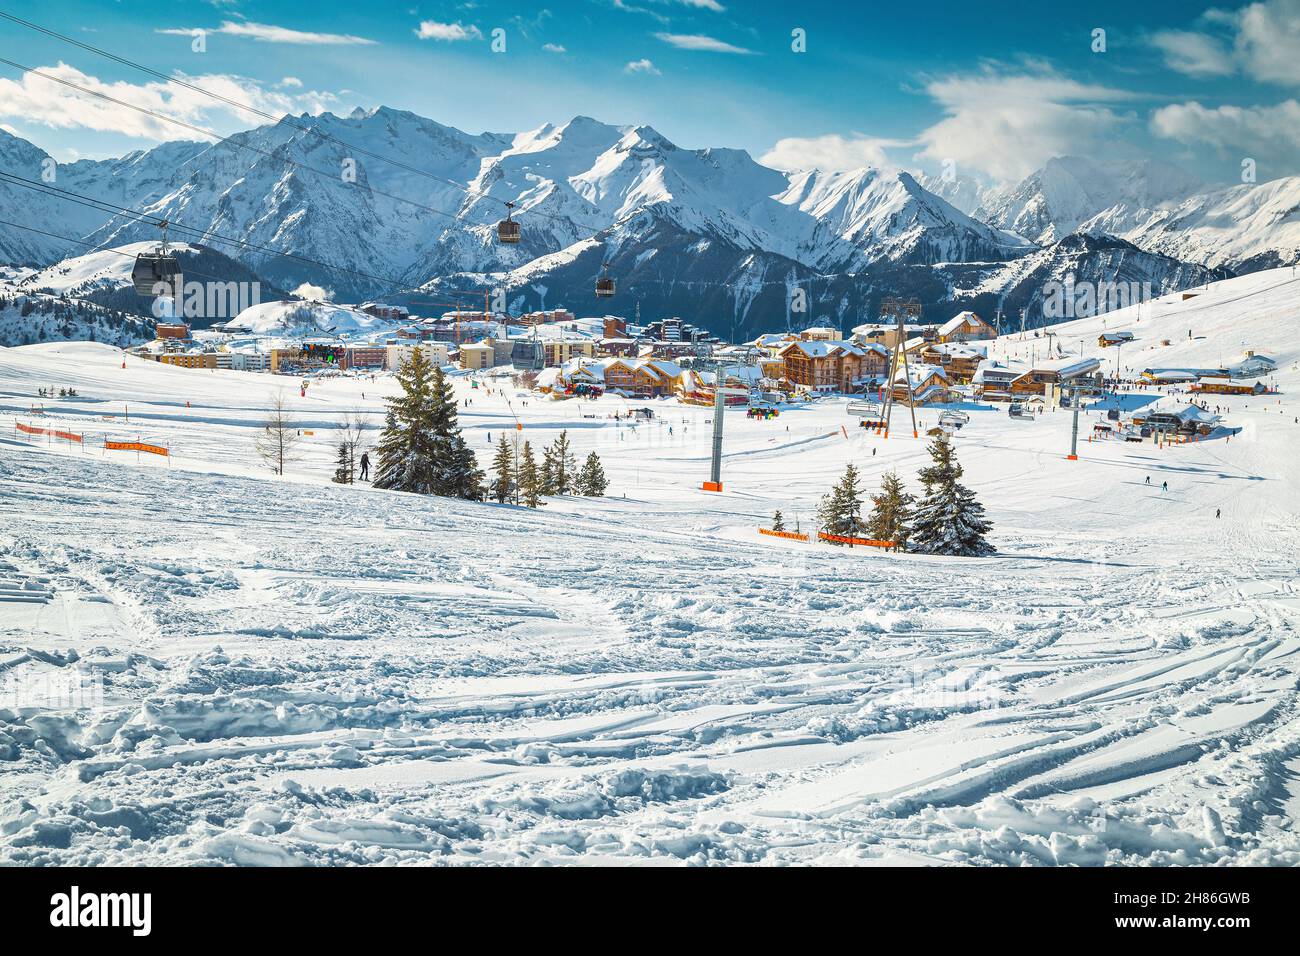 Piste da sci sulle fresche e profonde colline innevate. Stazione sciistica alpina con sciatori e funivie, Alpe d Huez, Francia, Europa Foto Stock